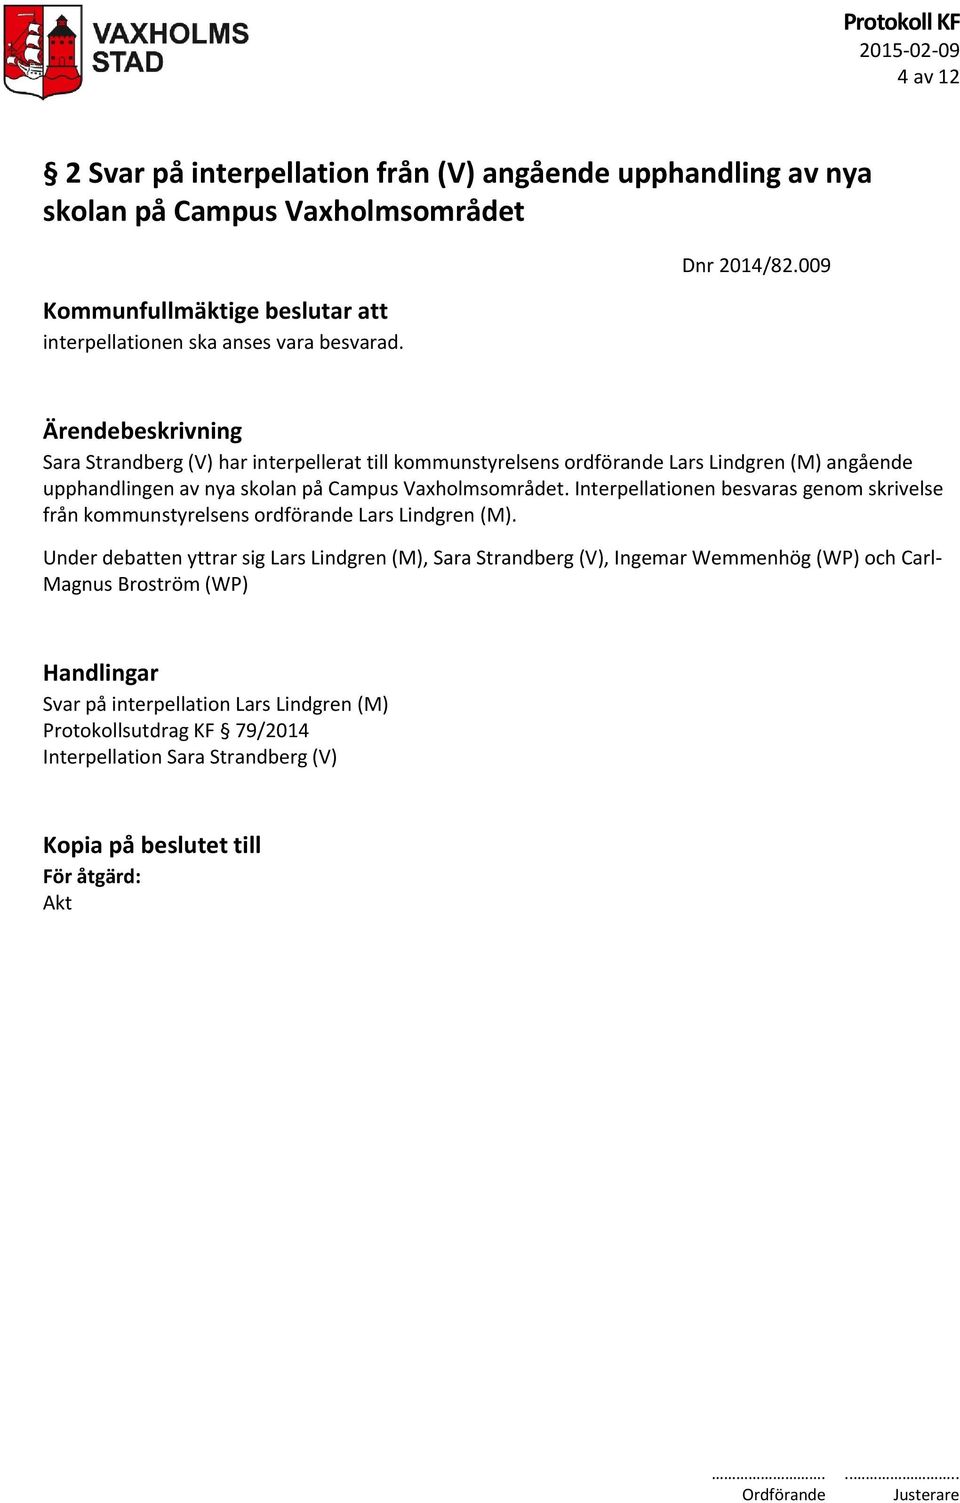 009 Ärendebeskrivning Sara Strandberg (V) har interpellerat till kommunstyrelsens ordförande Lars Lindgren (M) angående upphandlingen av nya skolan på Campus Vaxholmsområdet.